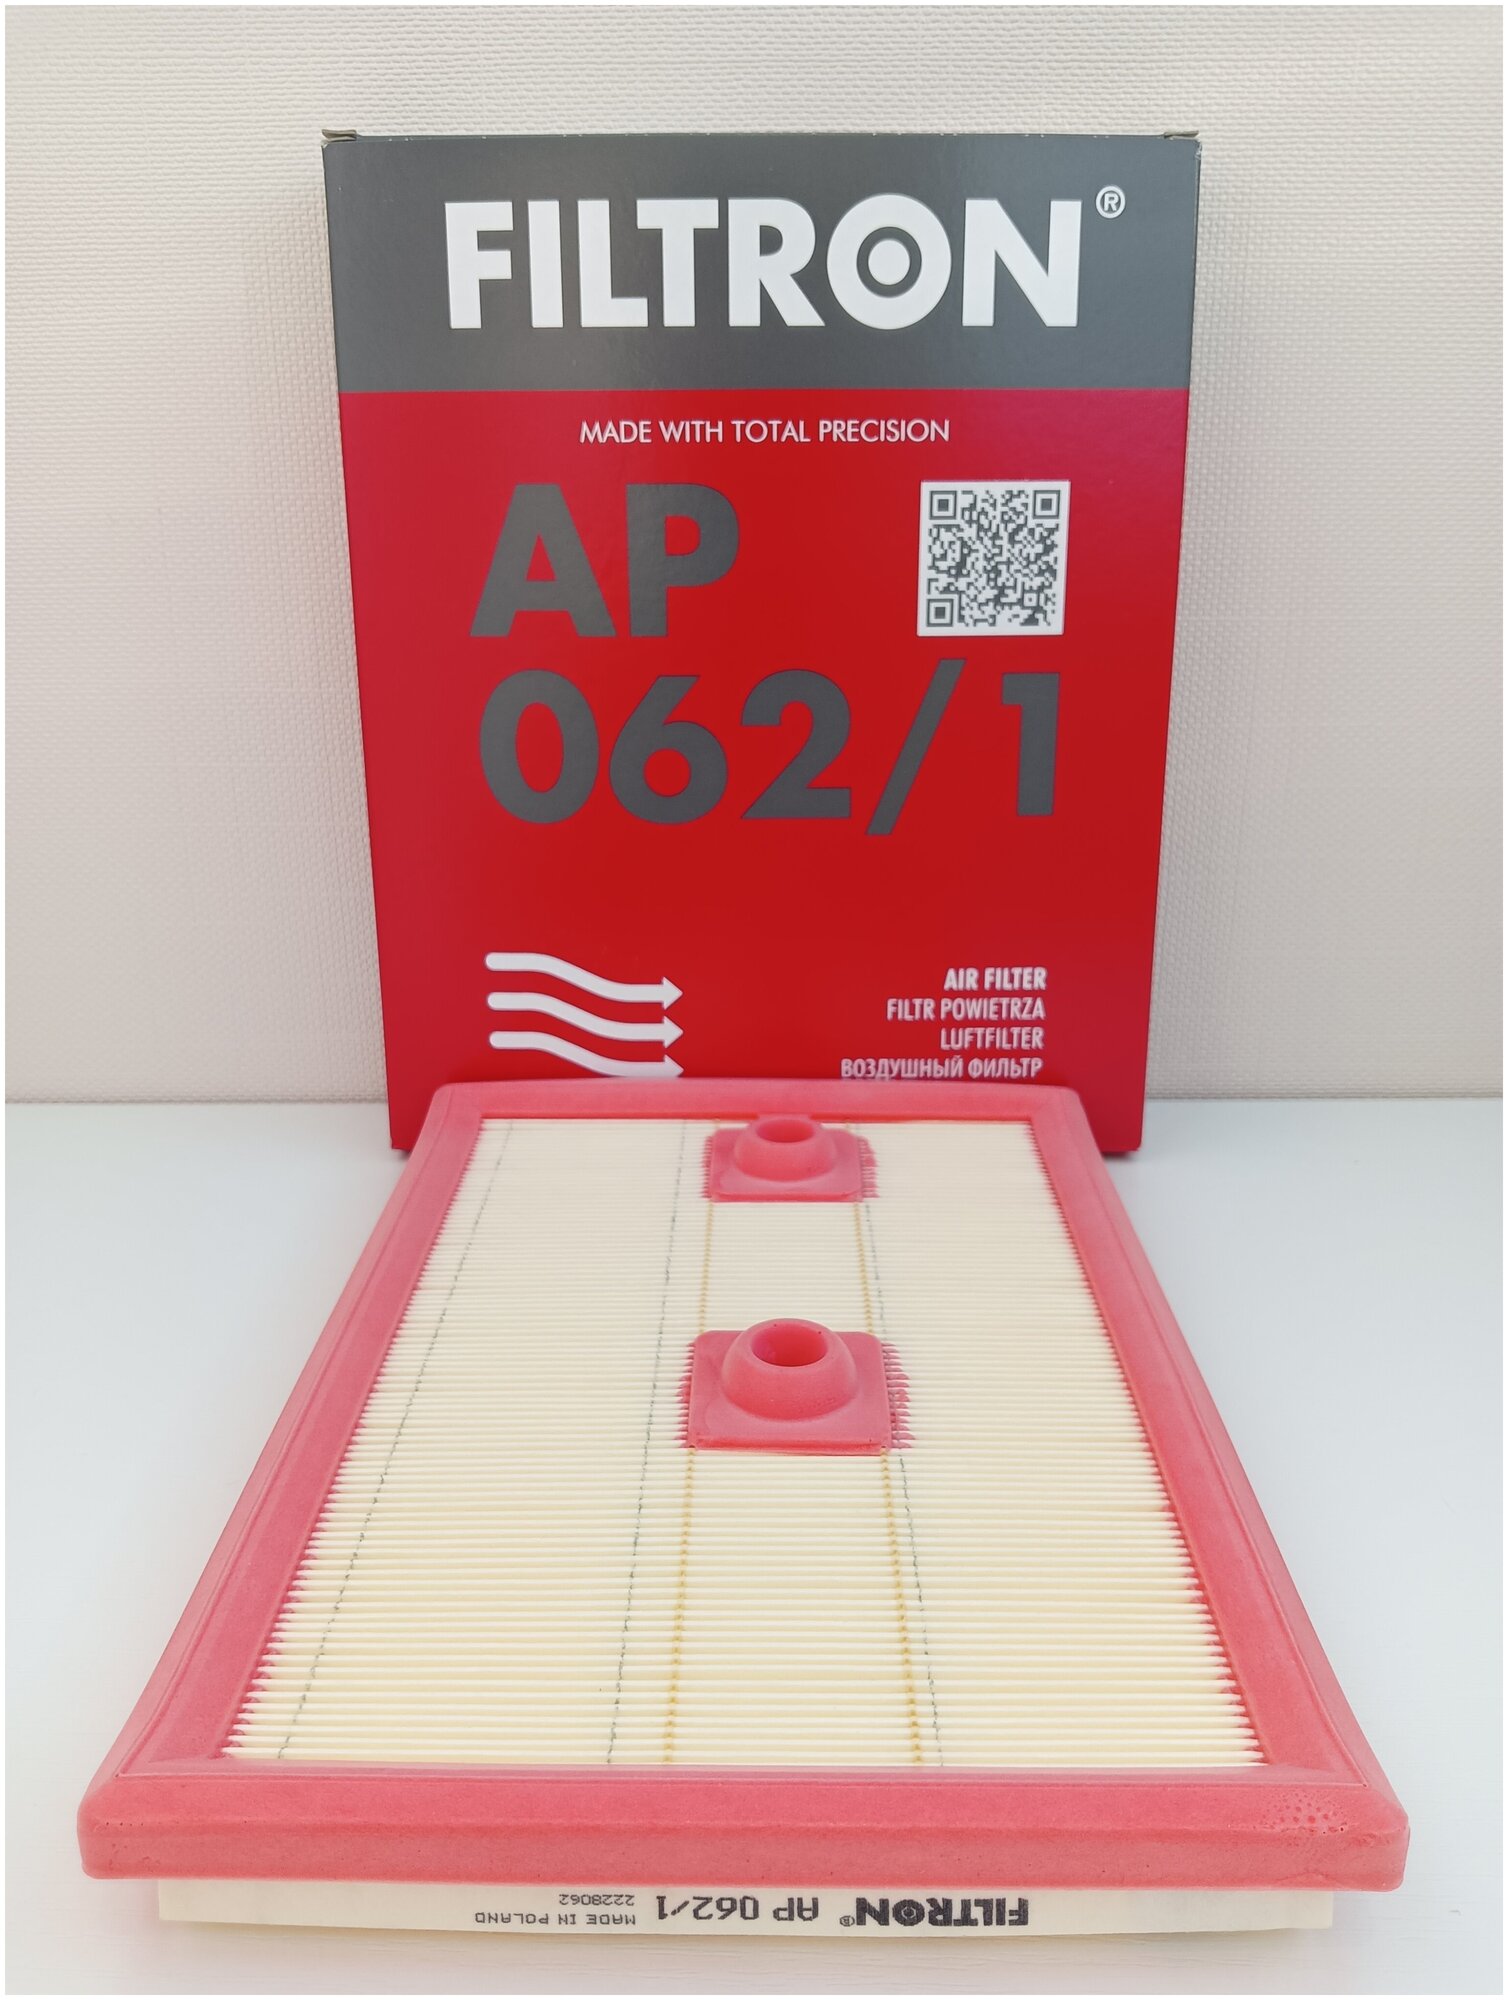 Воздушный фильтр FILTRON AP062/1